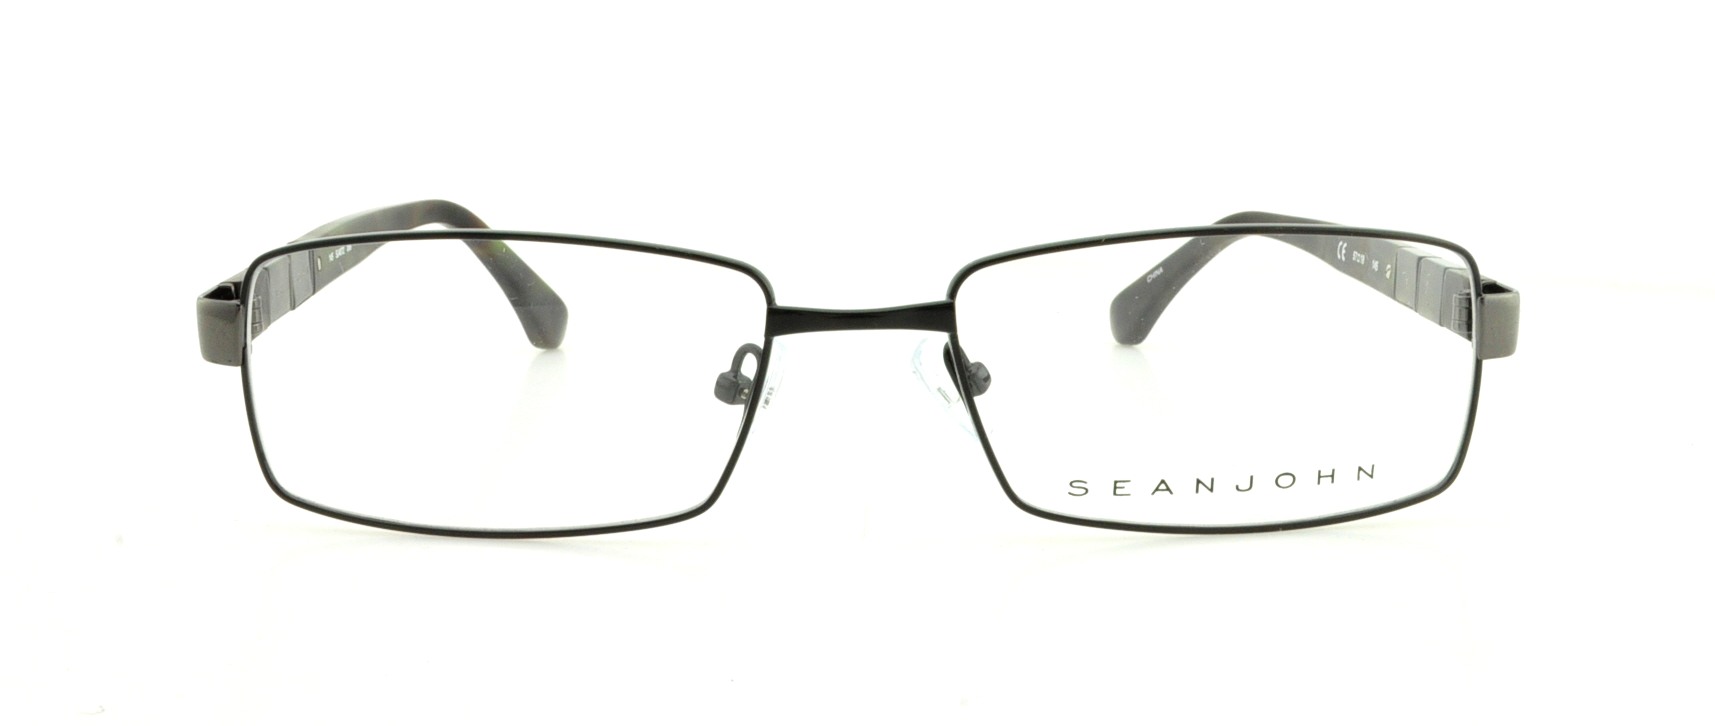 Designer Frames Outlet. Sean John Eyeglasses SJ4072